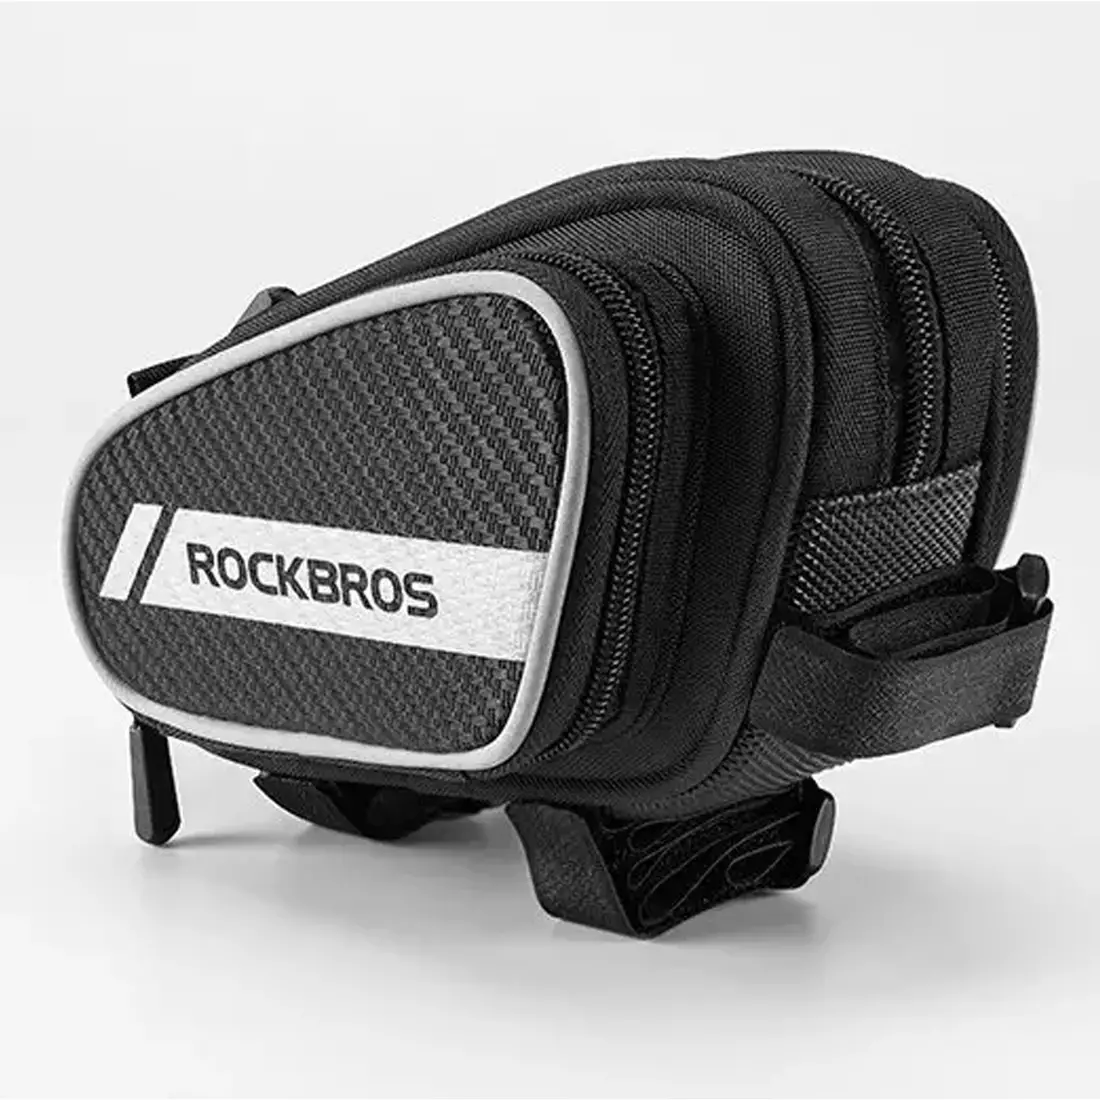 Rockbros geantă cadru / geantă 1,8l negru 006-1BK